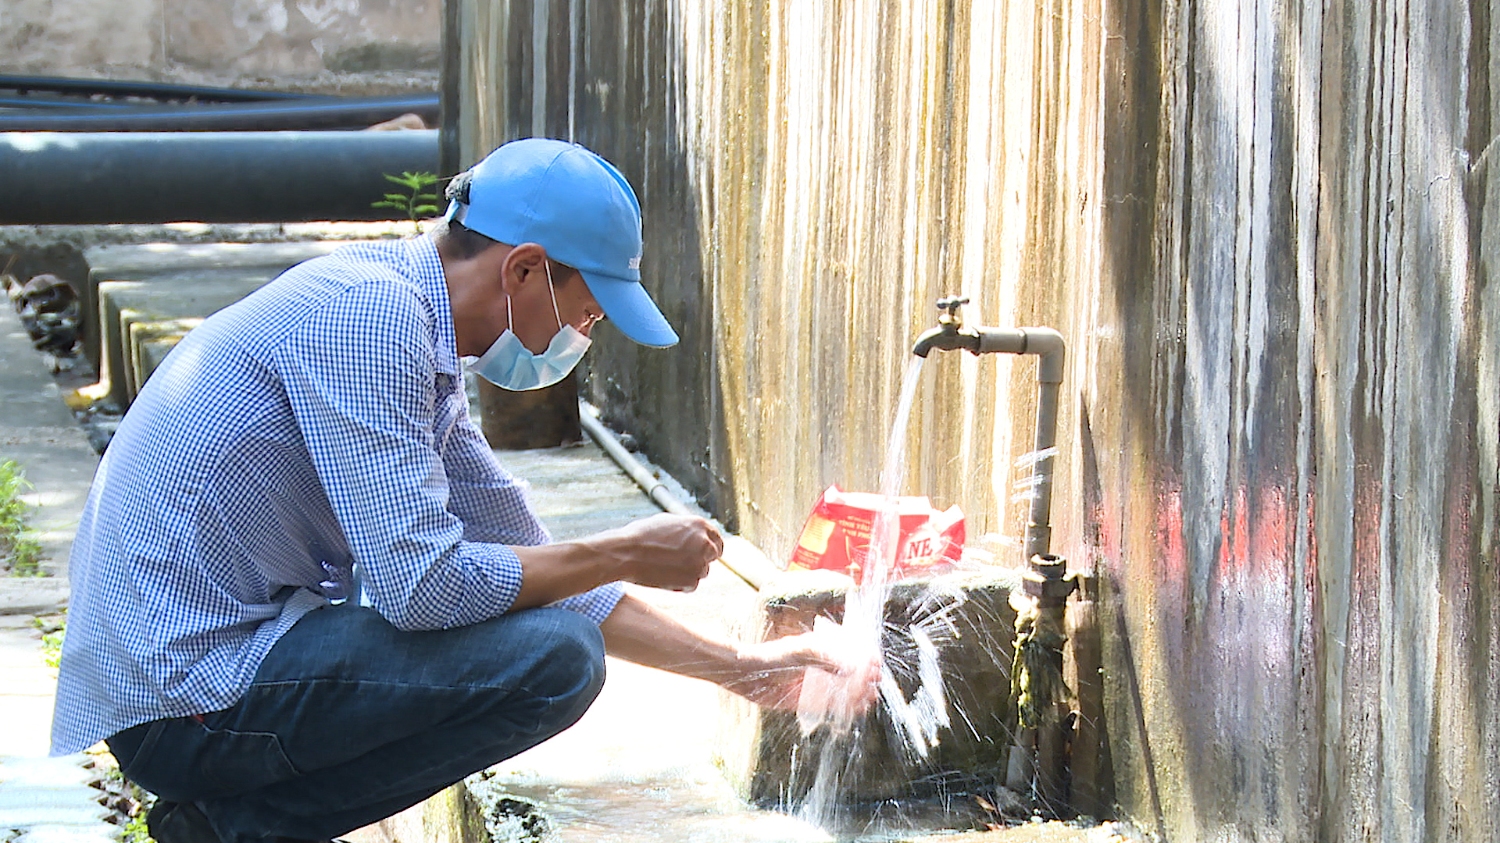 Cán bộ Chi nhánh cấp nước thị xã Ba Đồn thường xuyên lấy mẫu nước để kiểm tra chất lượng, đảm bảo an toàn cho người sử dụng